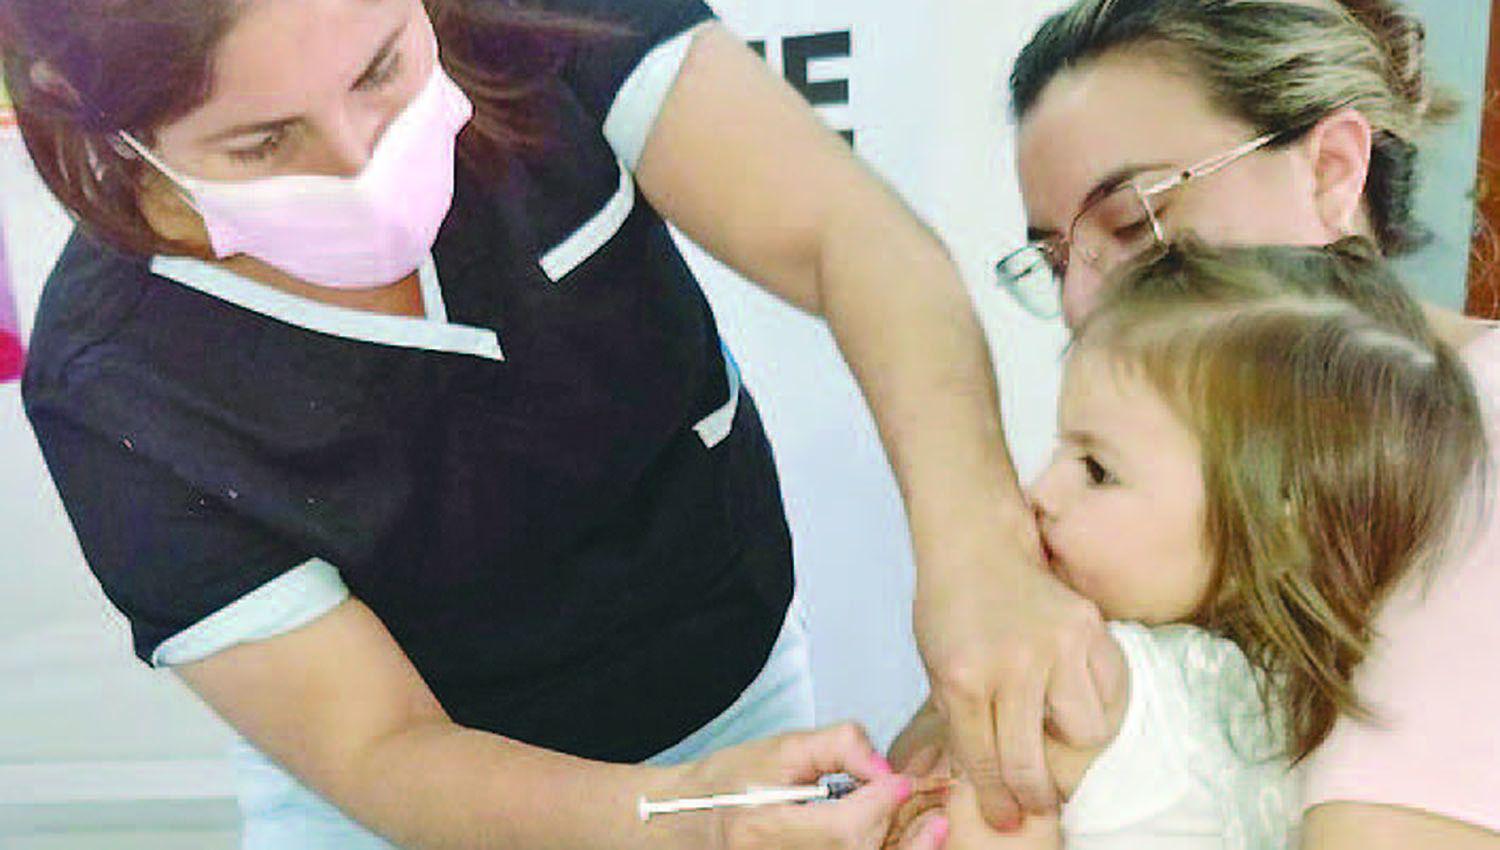 La campantildea de vacunacioacuten contra sarampioacuten rubeacuteola paperas y polio seguiraacute hasta diciembre